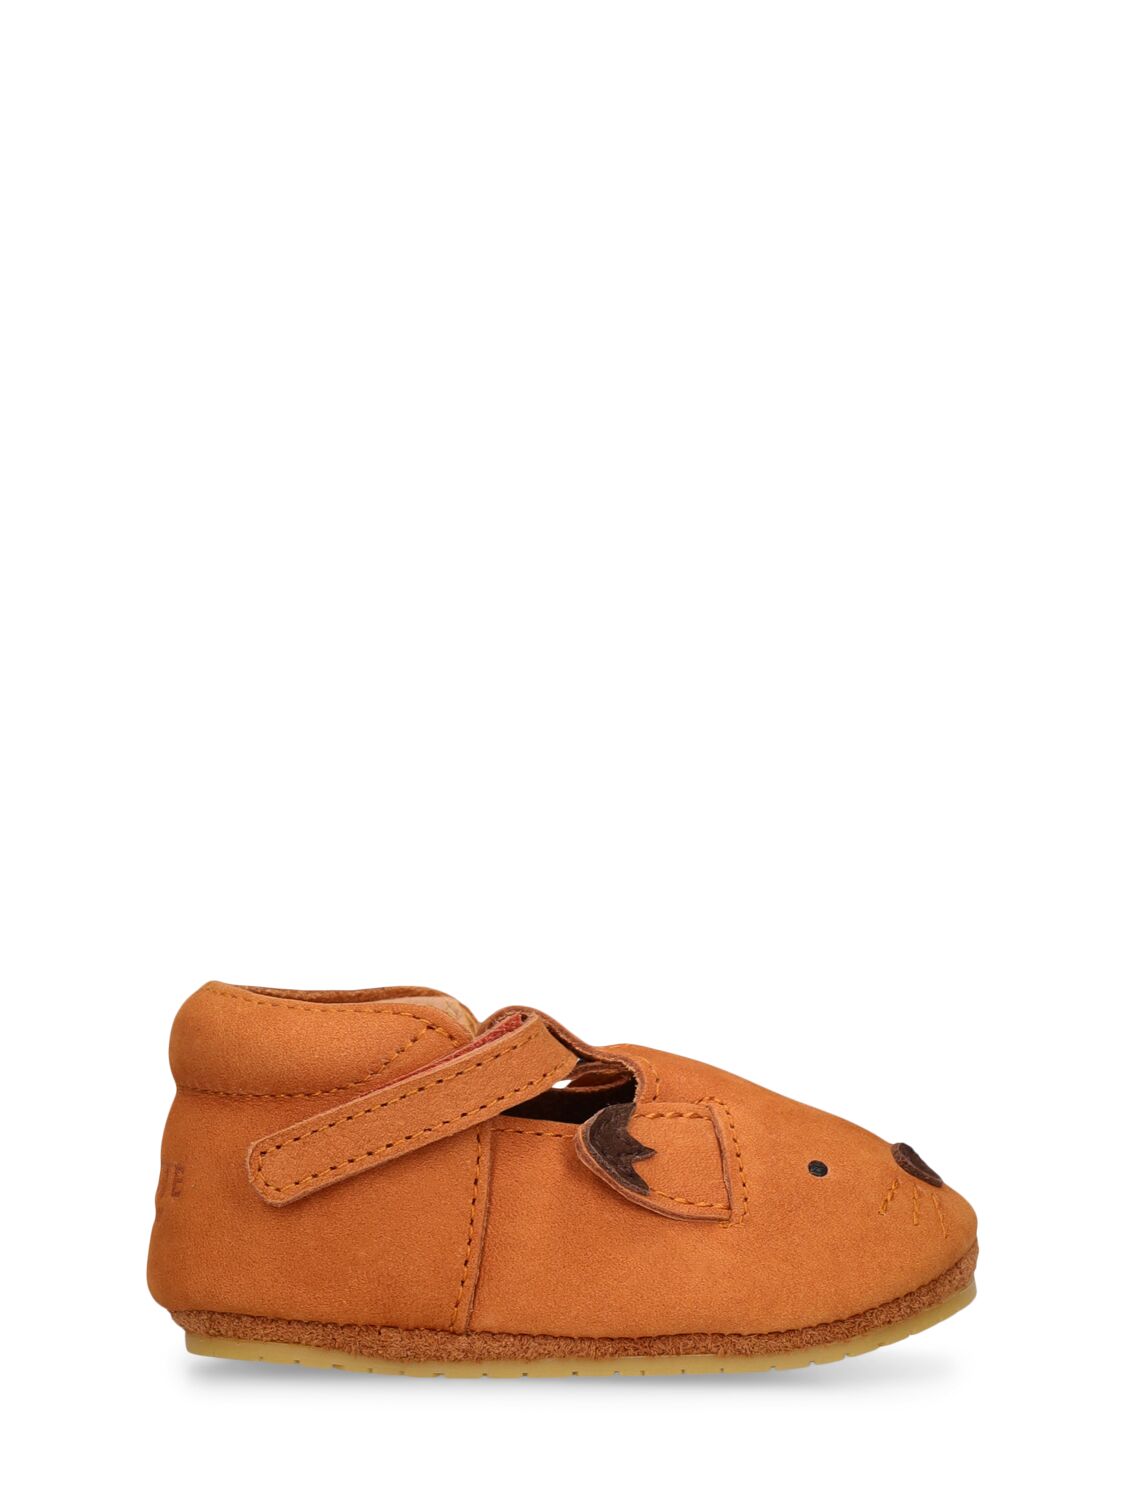 Donsje Babies' Fox Leather Pre-walker Shoes In Brown